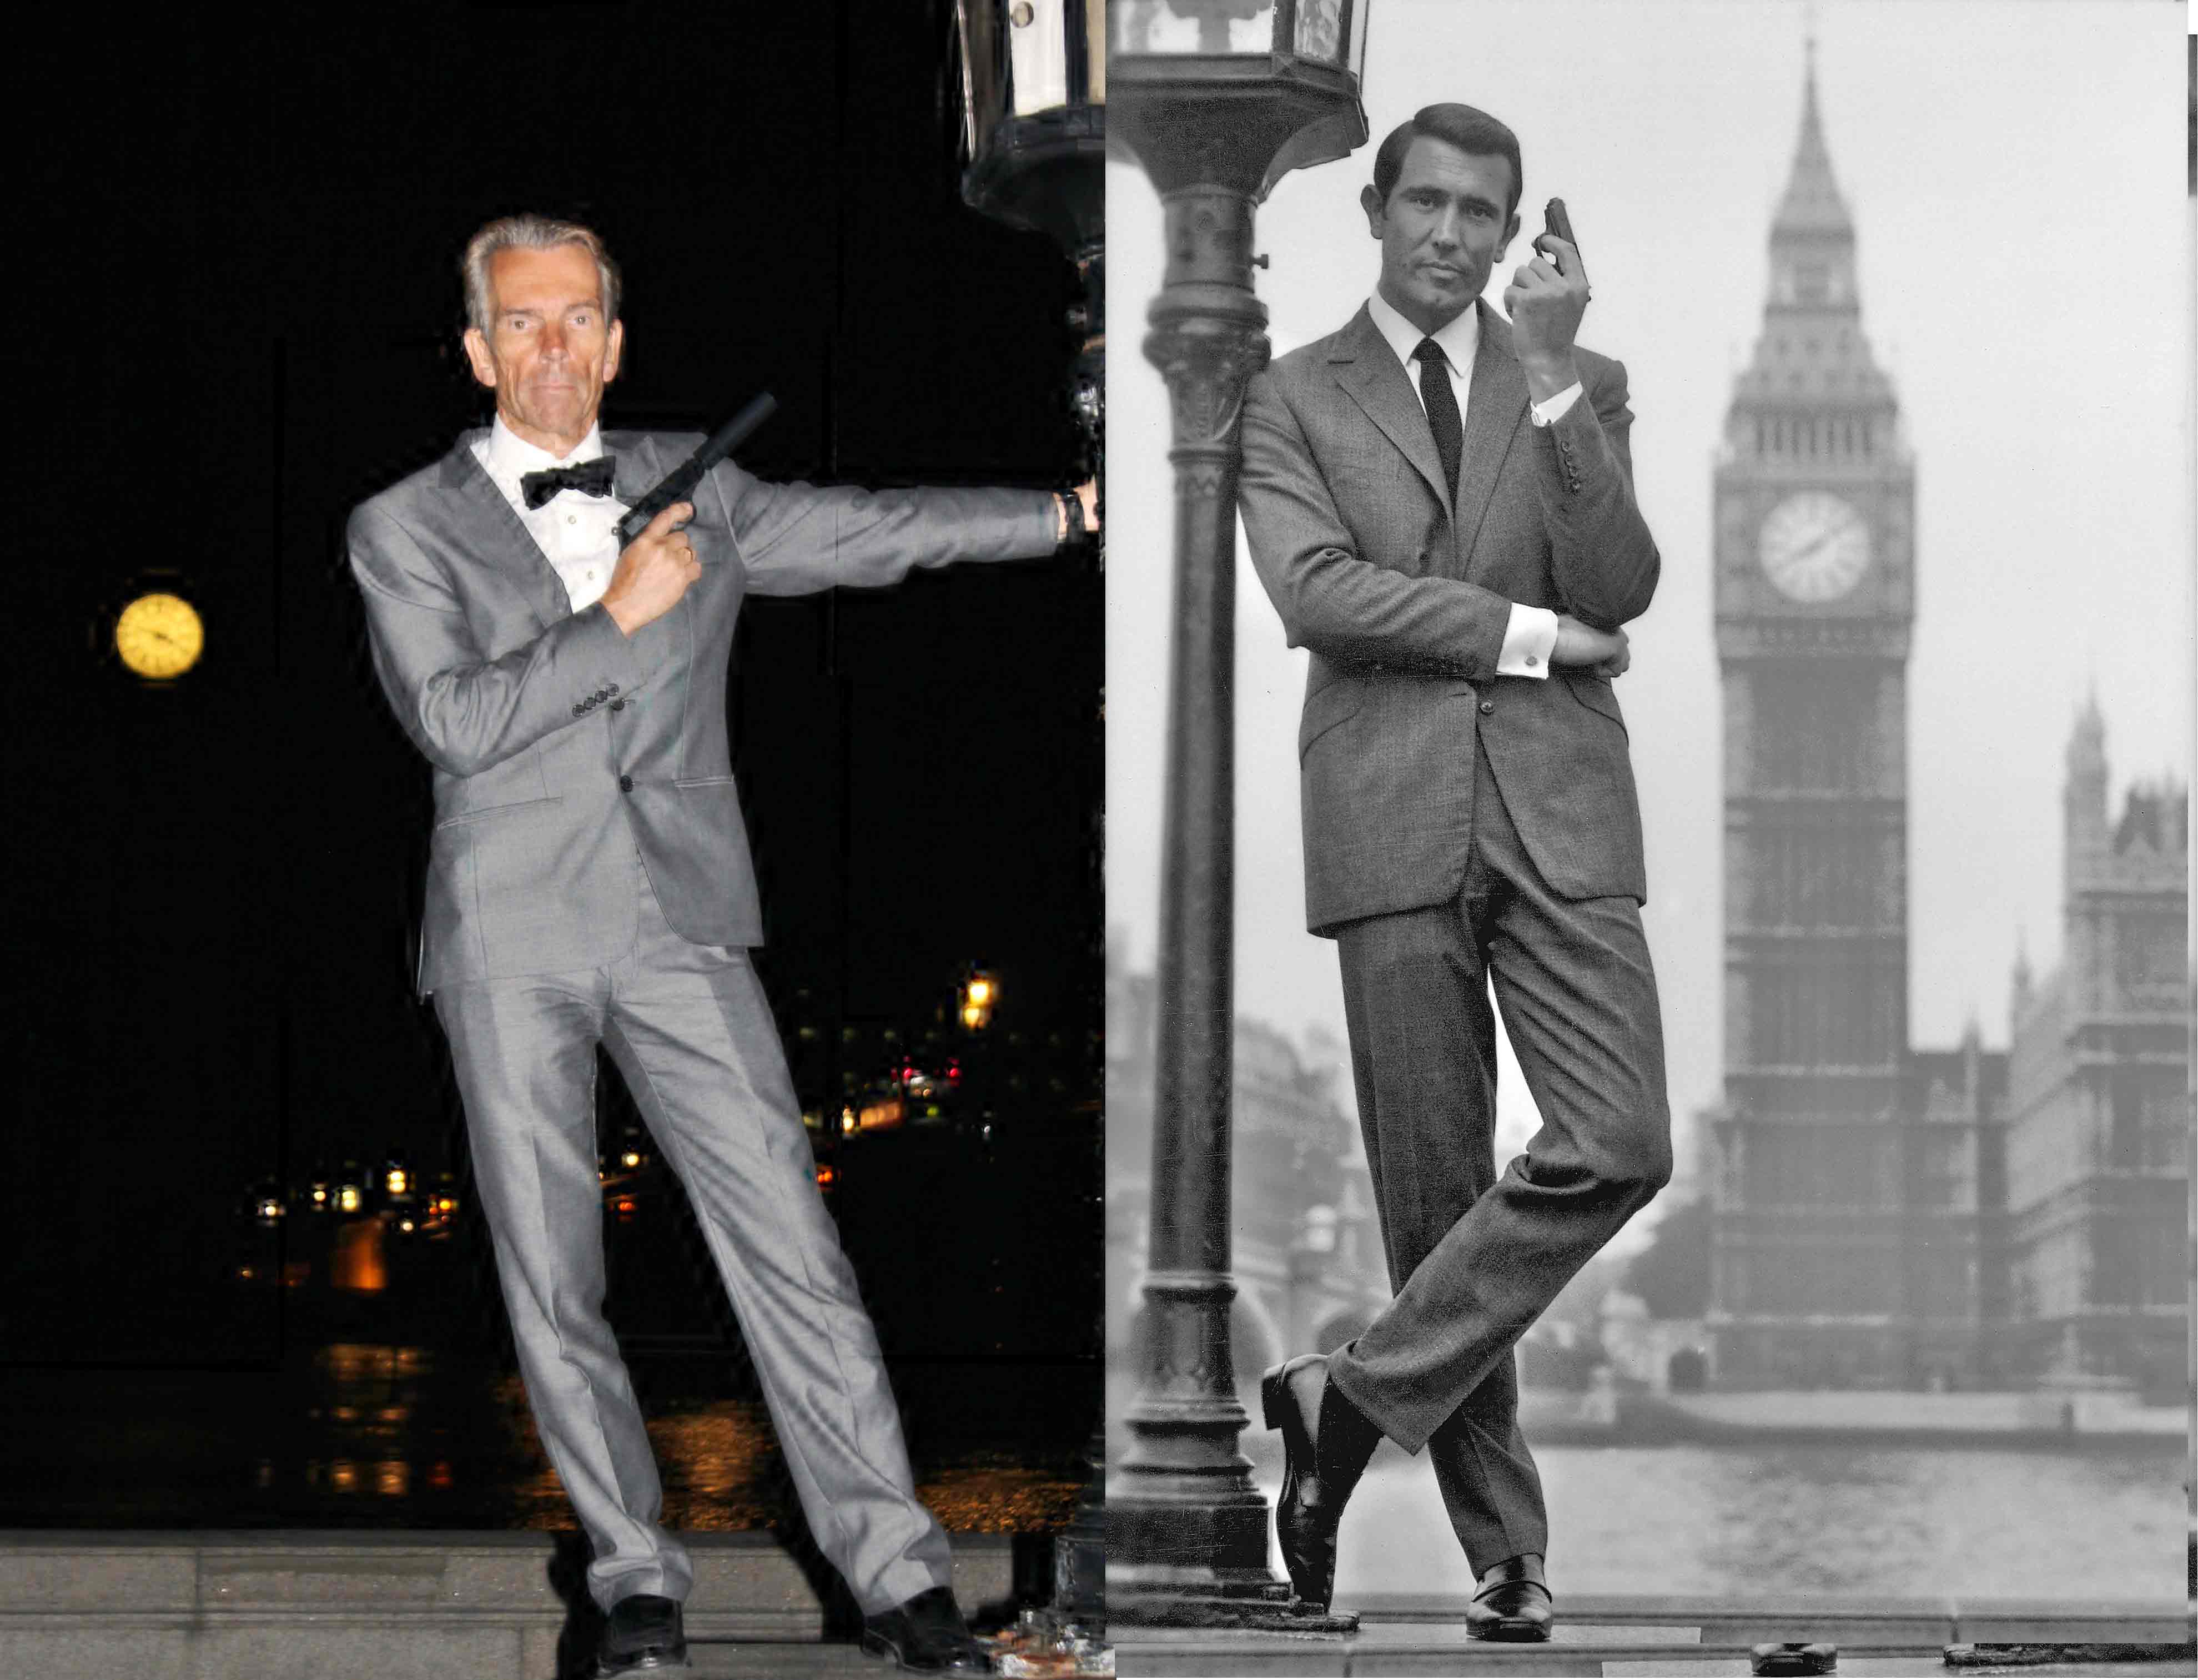 Gunnar Schfer James Bond and George Lazenby as James Bond Big Ben London